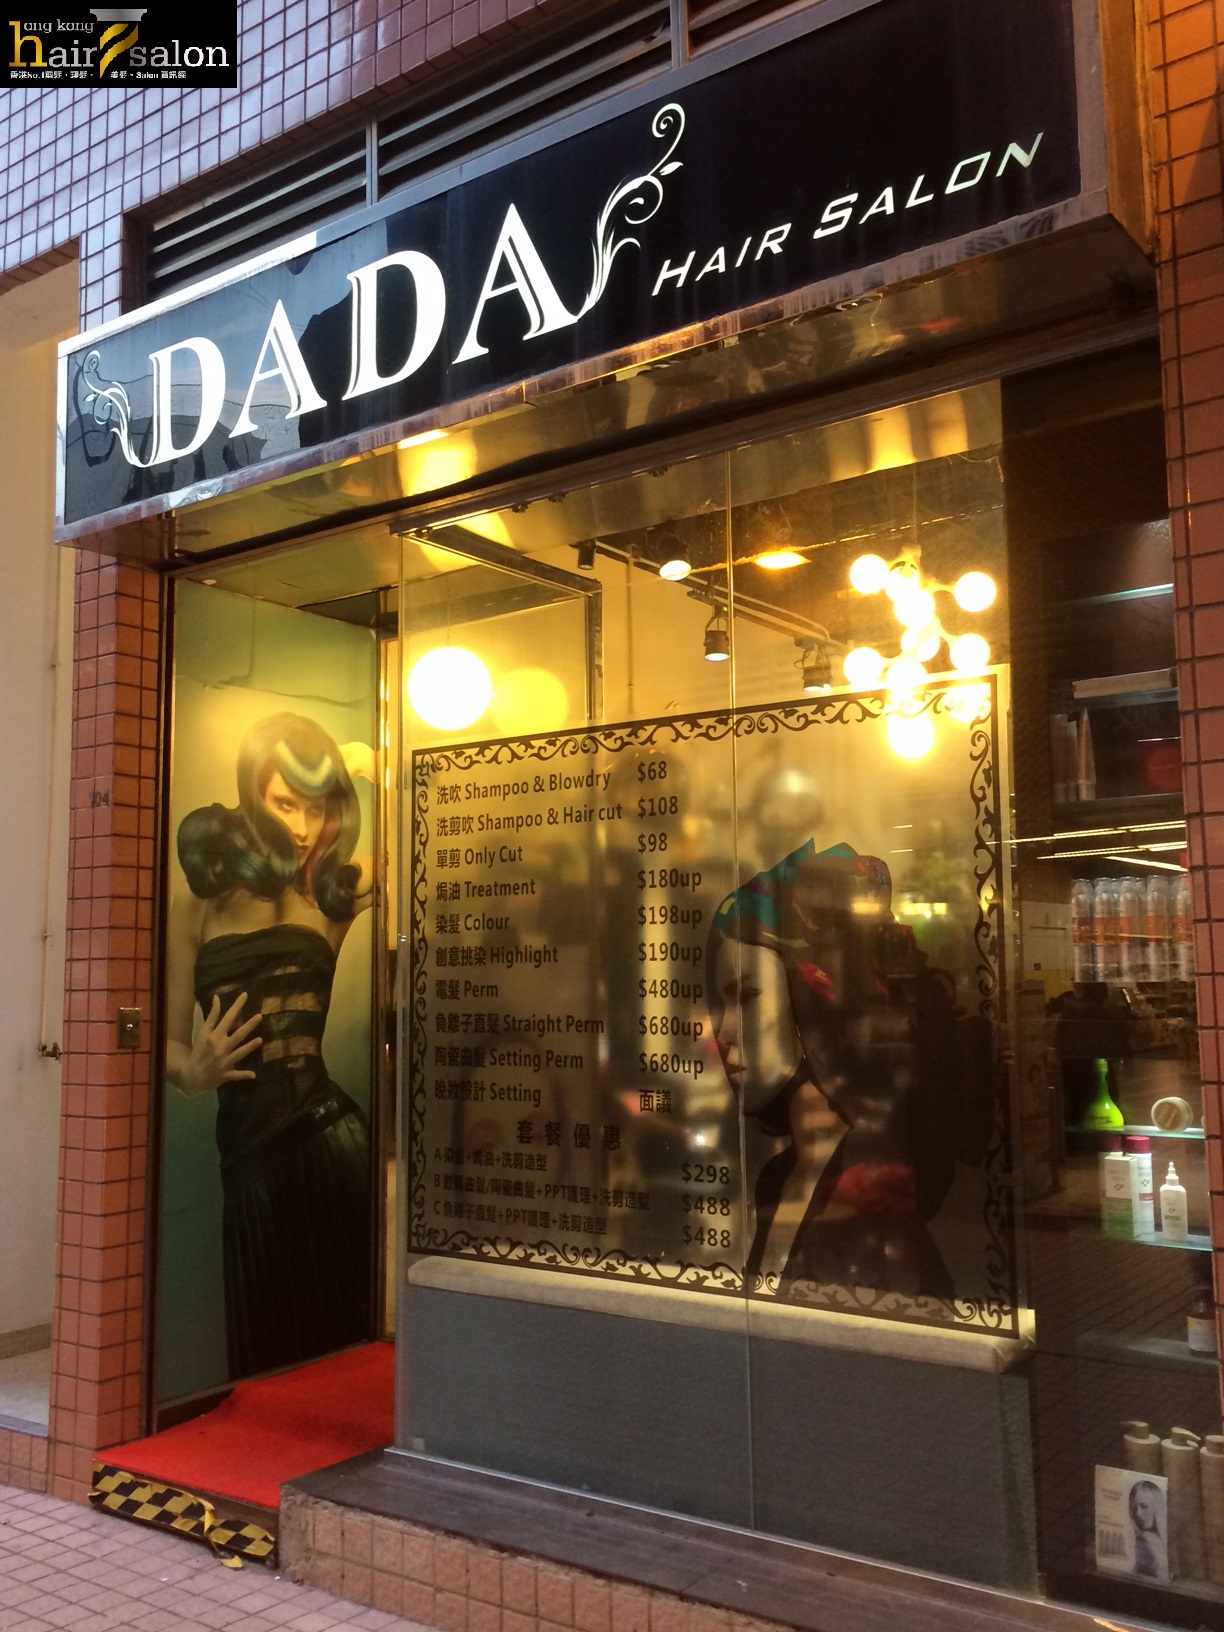 Hair Colouring: DaDa Hair Salon